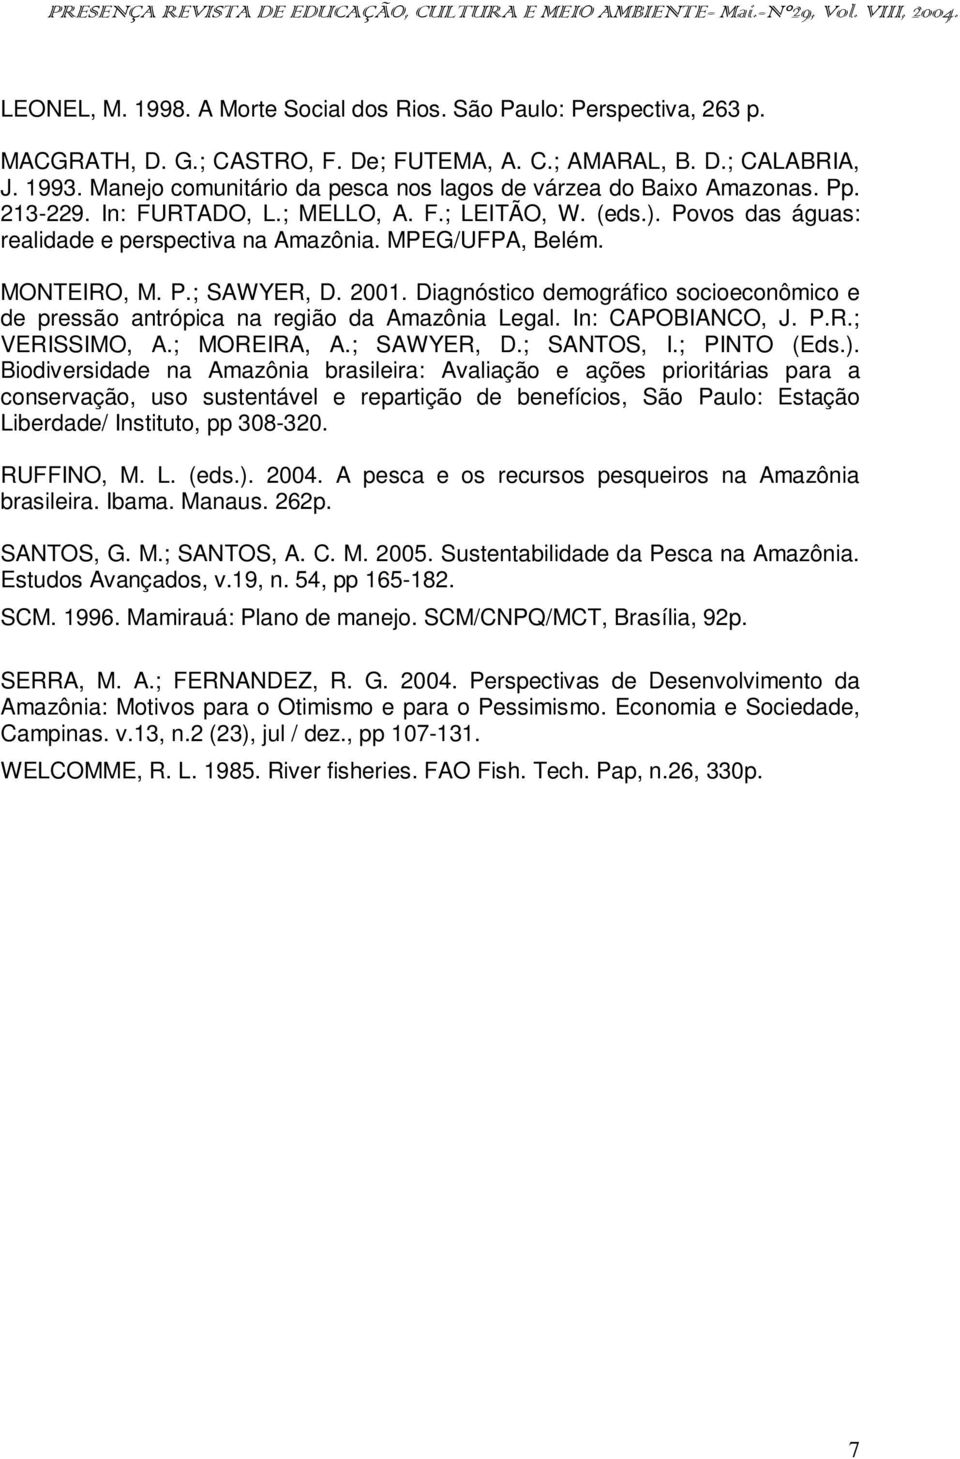 MPEG/UFPA, Belém. MONTEIRO, M. P.; SAWYER, D. 2001. Diagnóstico demográfico socioeconômico e de pressão antrópica na região da Amazônia Legal. In: CAPOBIANCO, J. P.R.; VERISSIMO, A.; MOREIRA, A.